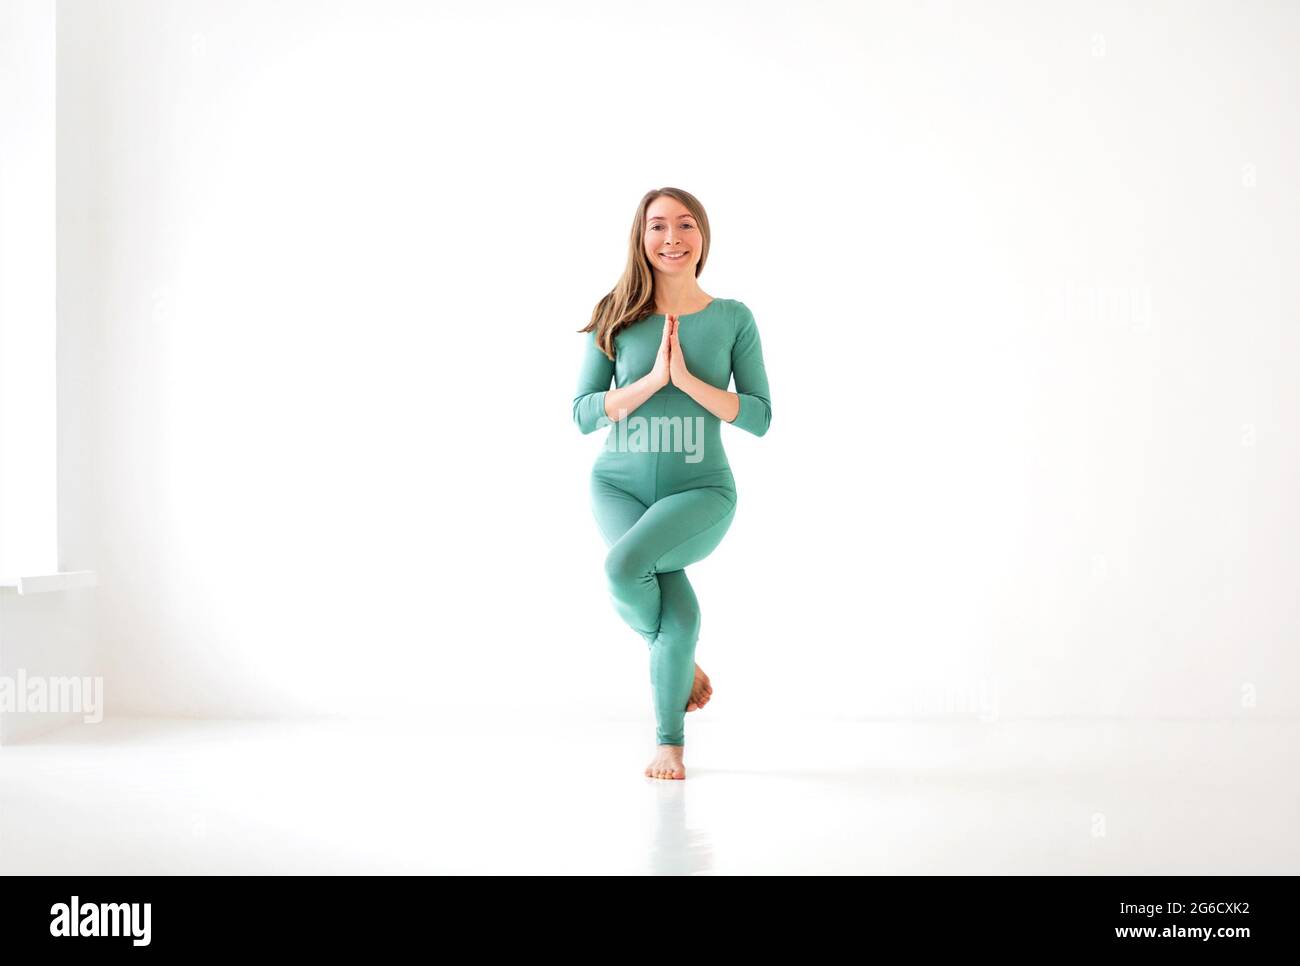 Ruhige Frau in Sportkleidung, die in Firefly Pose Yoga praktiziert, während sie ausbalanciert und wegschaut Stockfoto